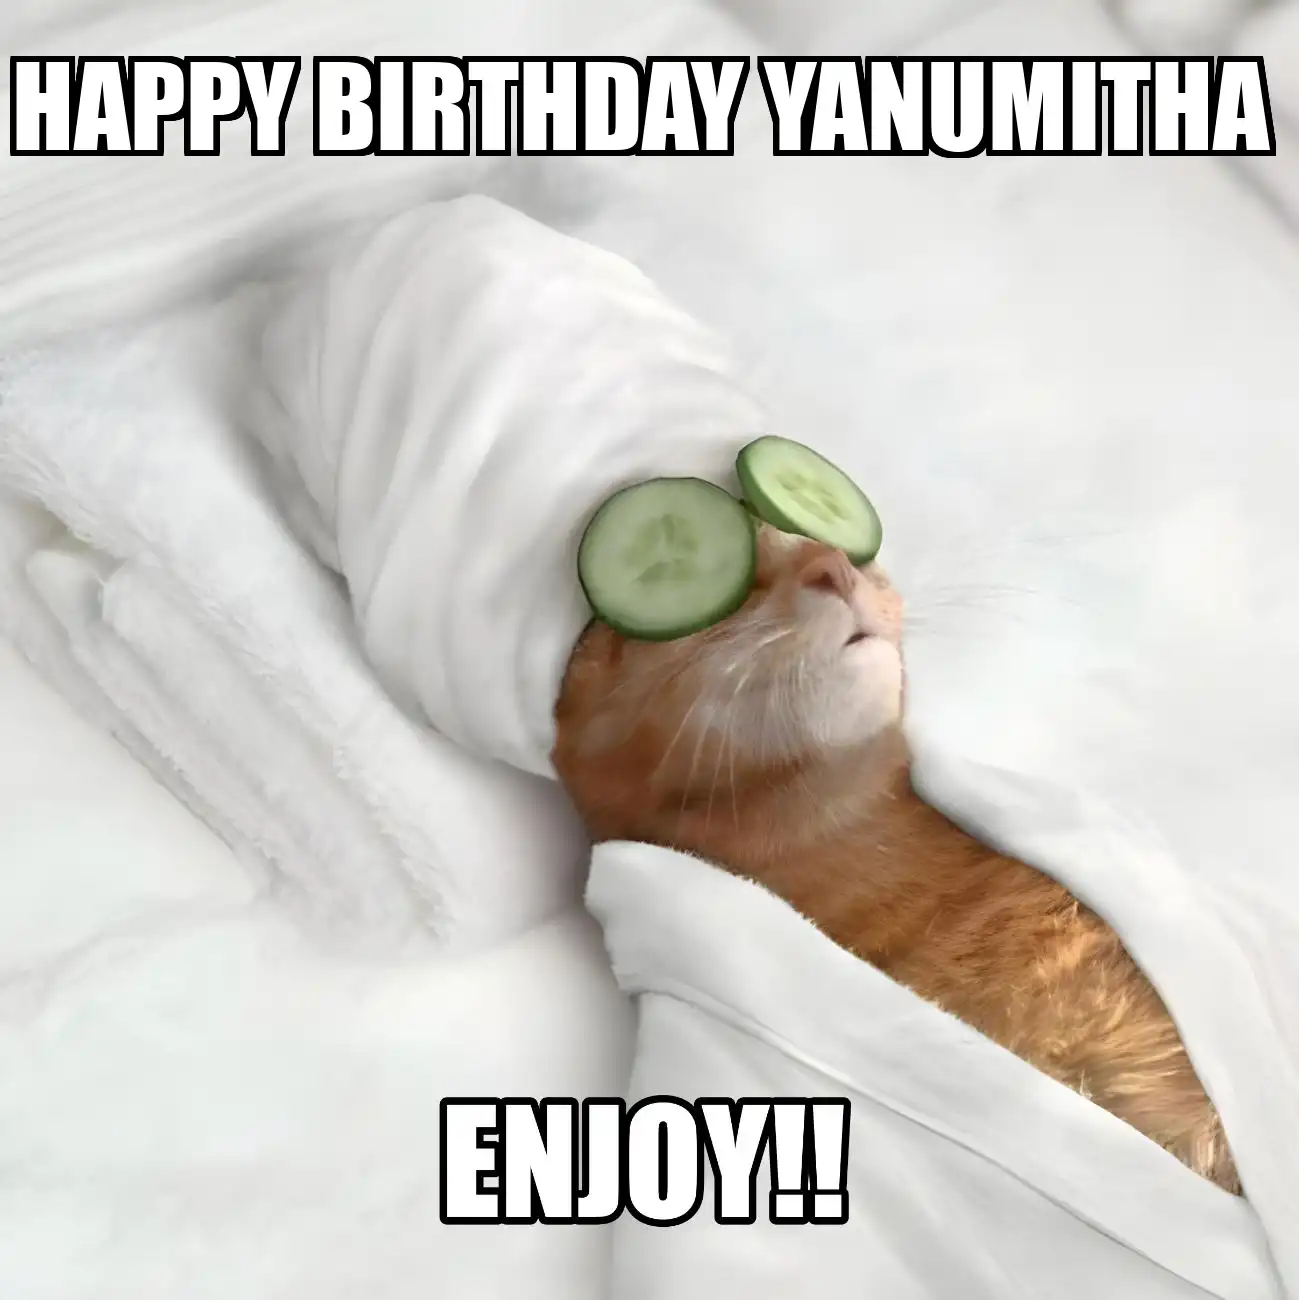 Happy Birthday Yanumitha Enjoy Cat Meme